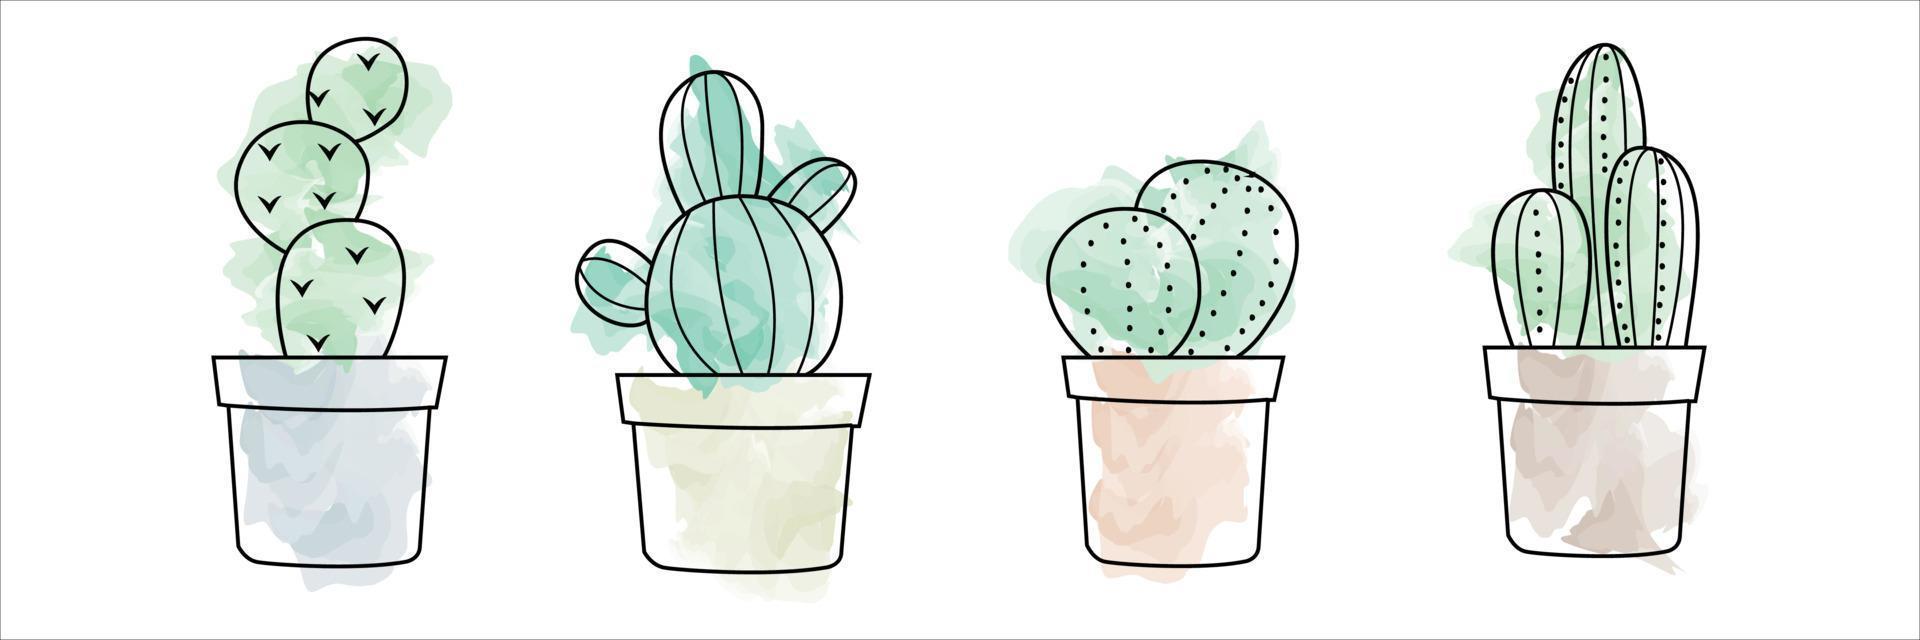 watercolor cactus  vector